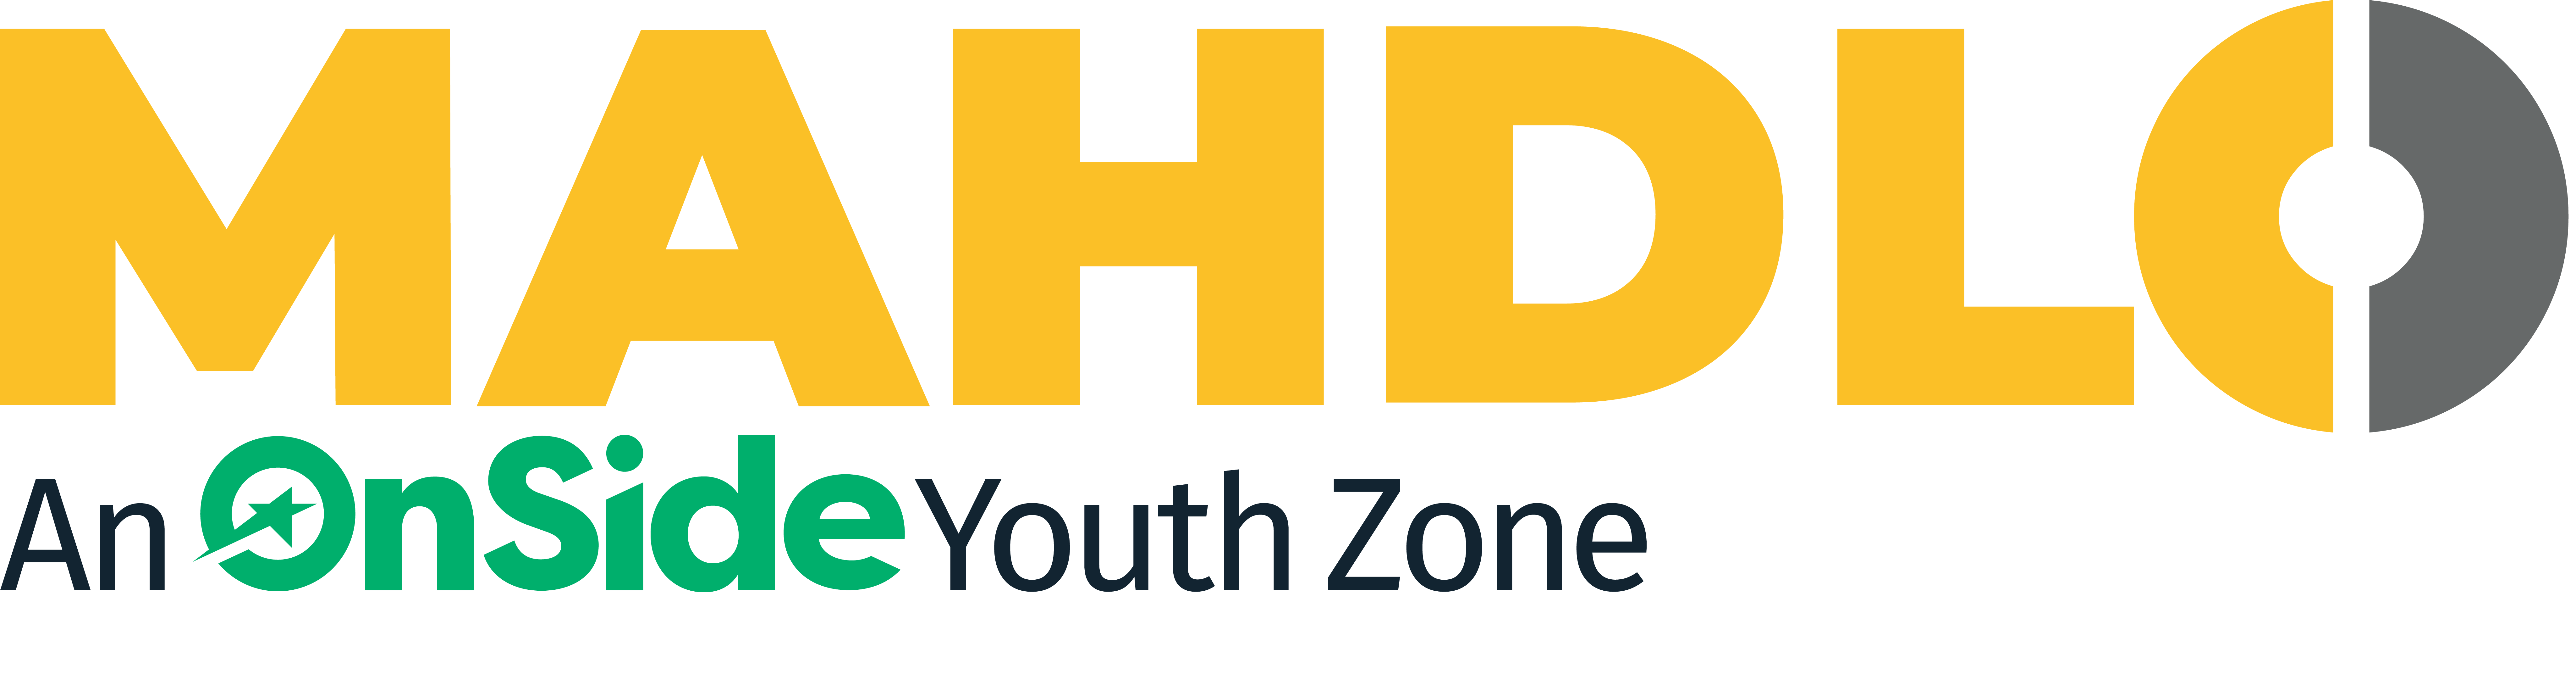 Mahdlo Youth Zone logo